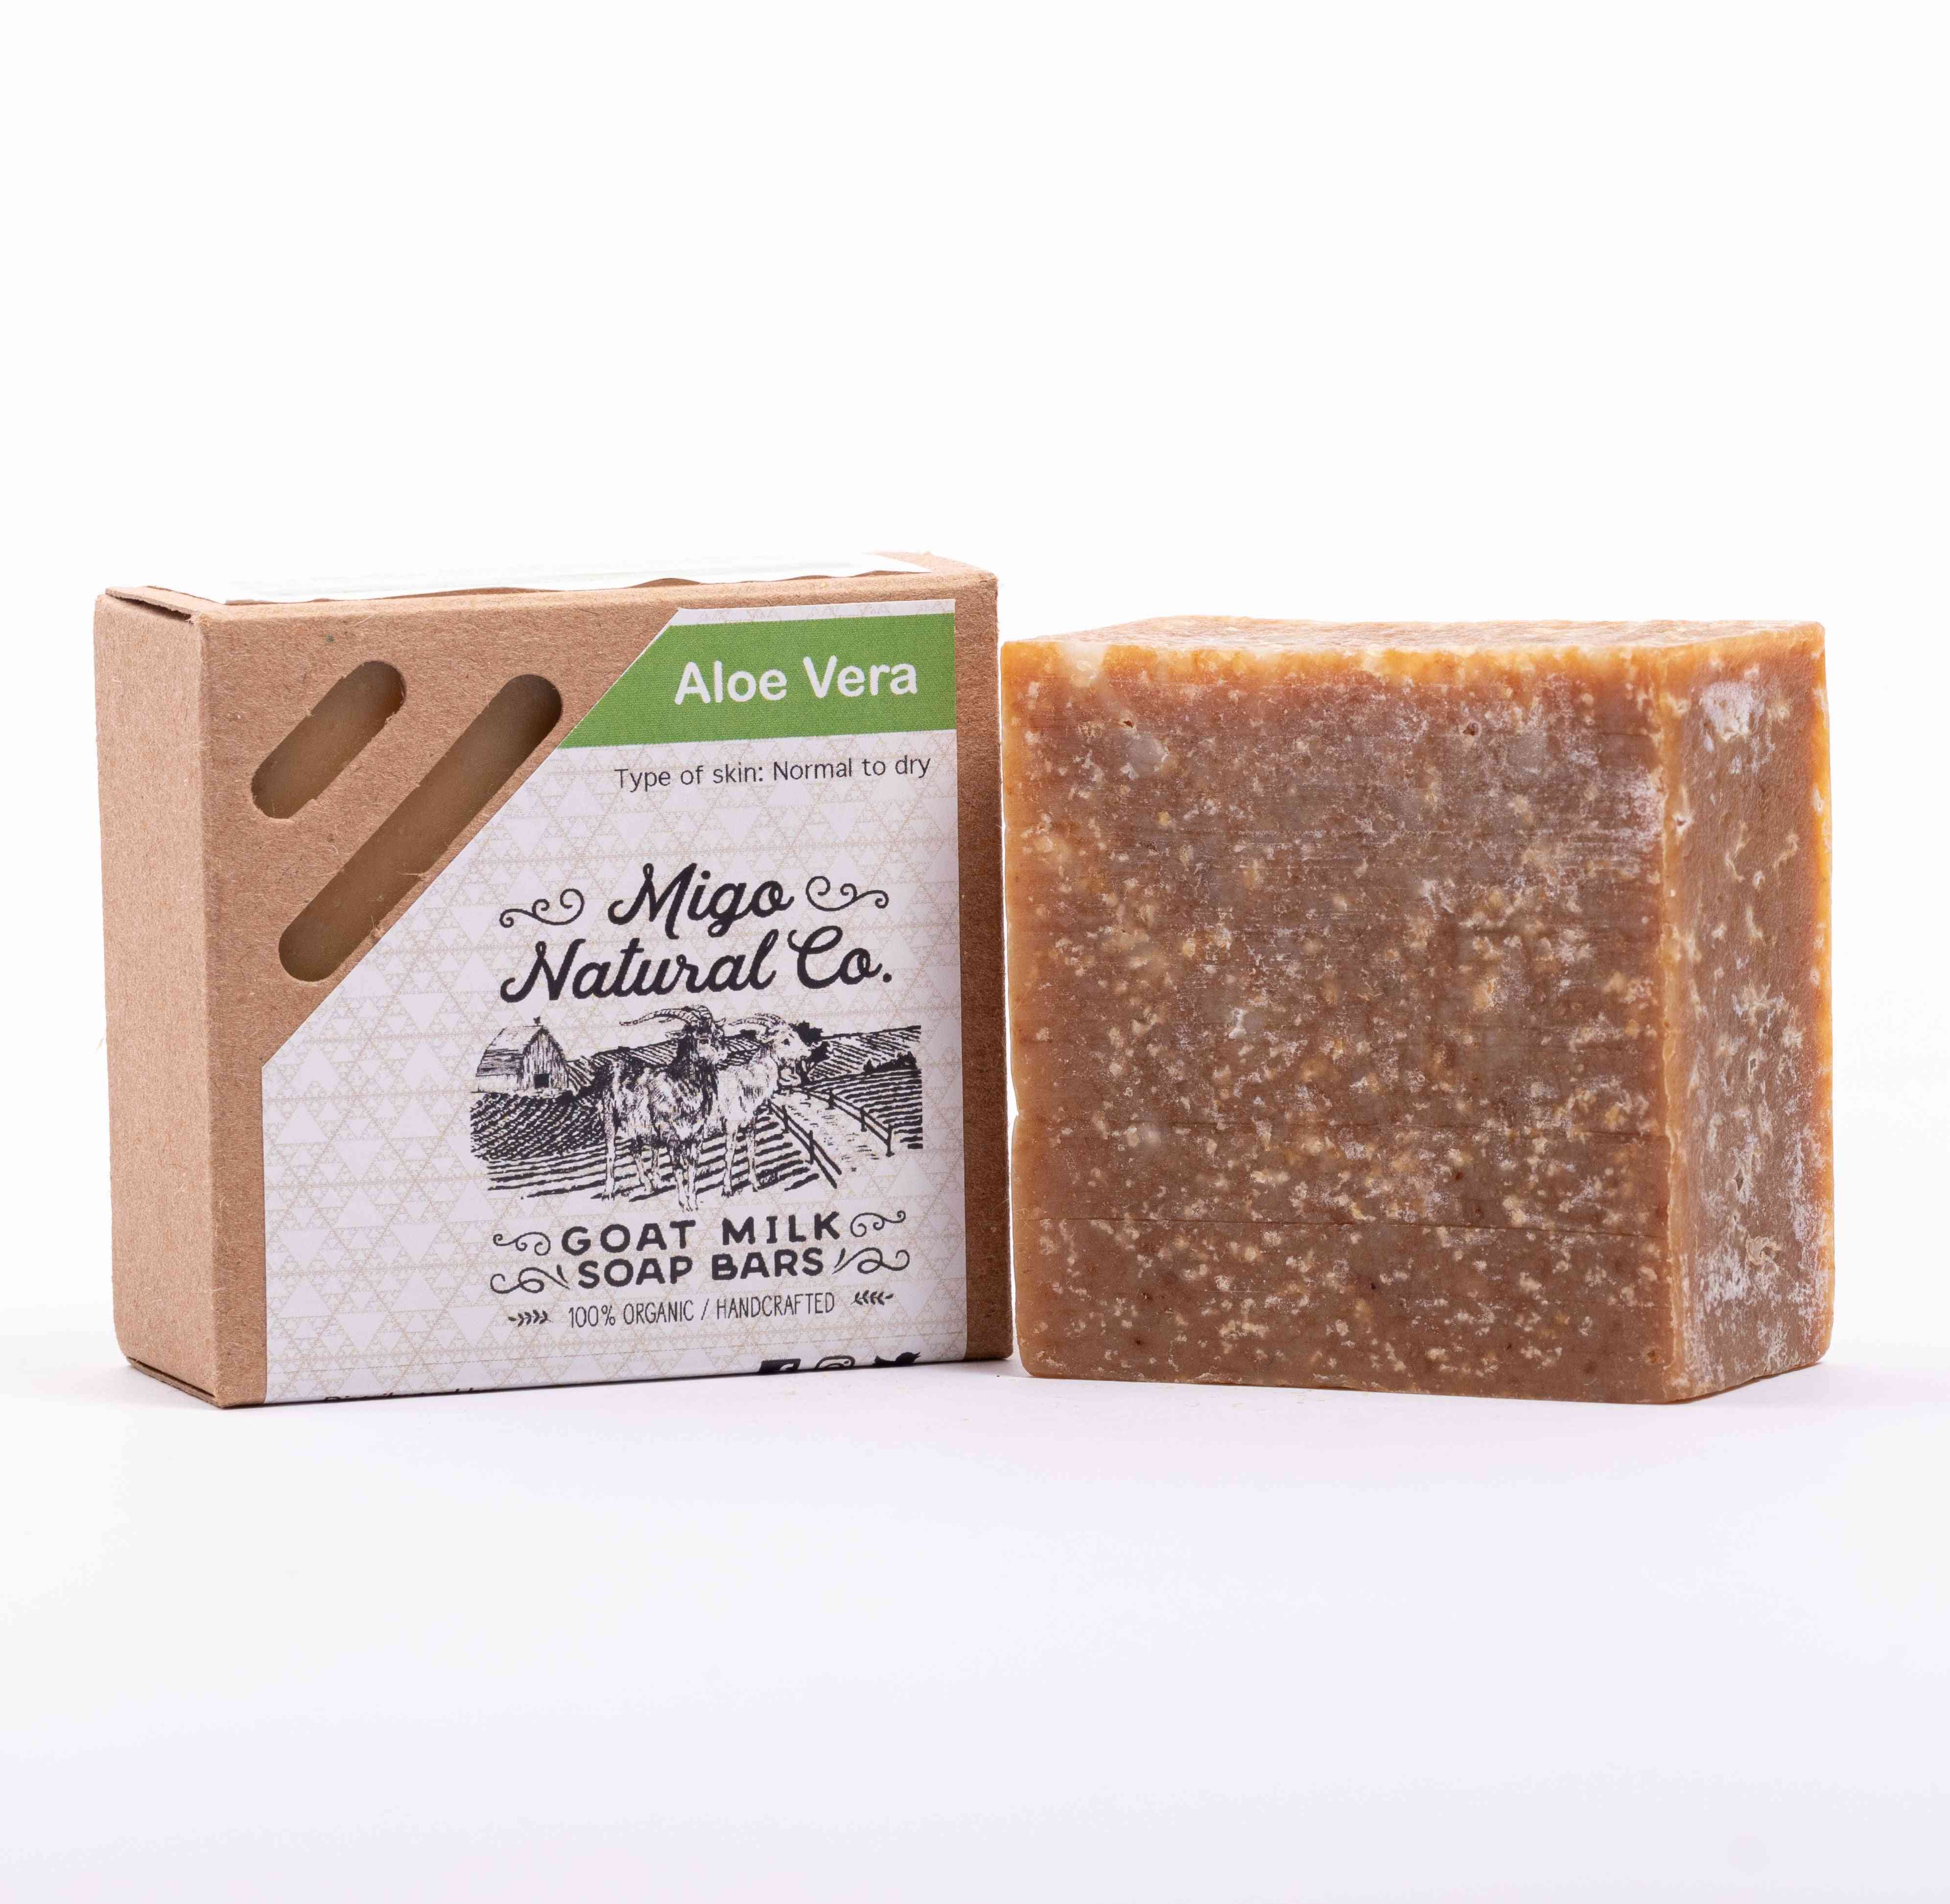 Aloe Vera Goat Milk Soap